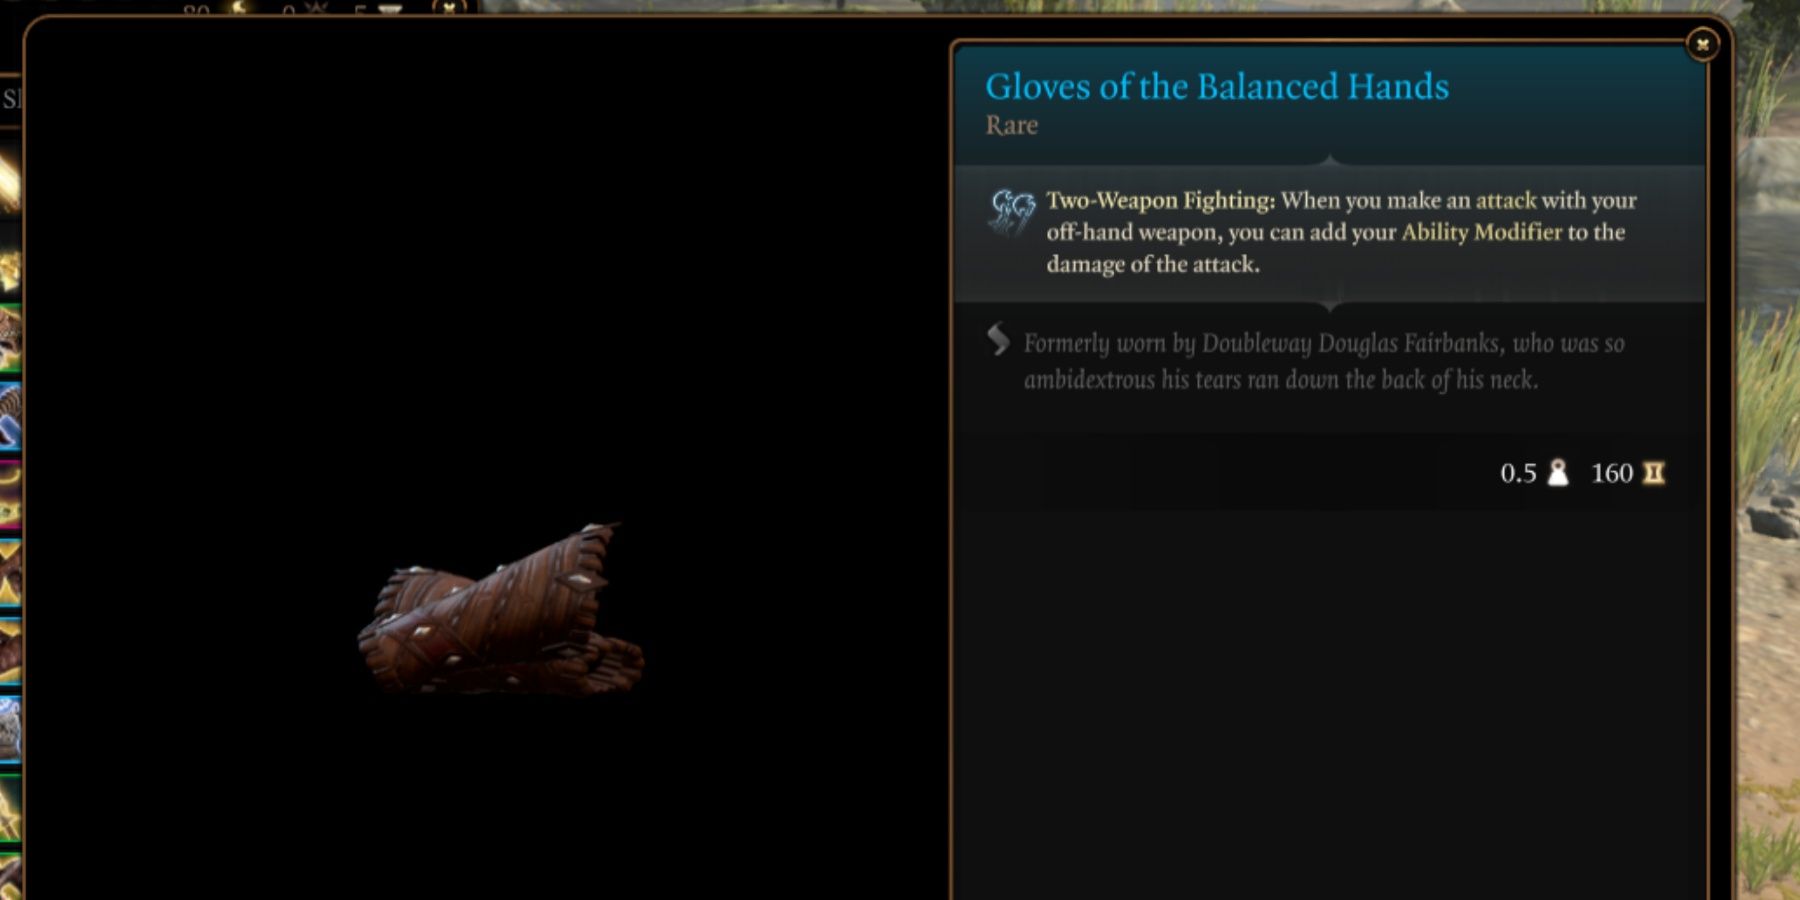 BG3 Gloves of the Balanced Hands in-game item menu description